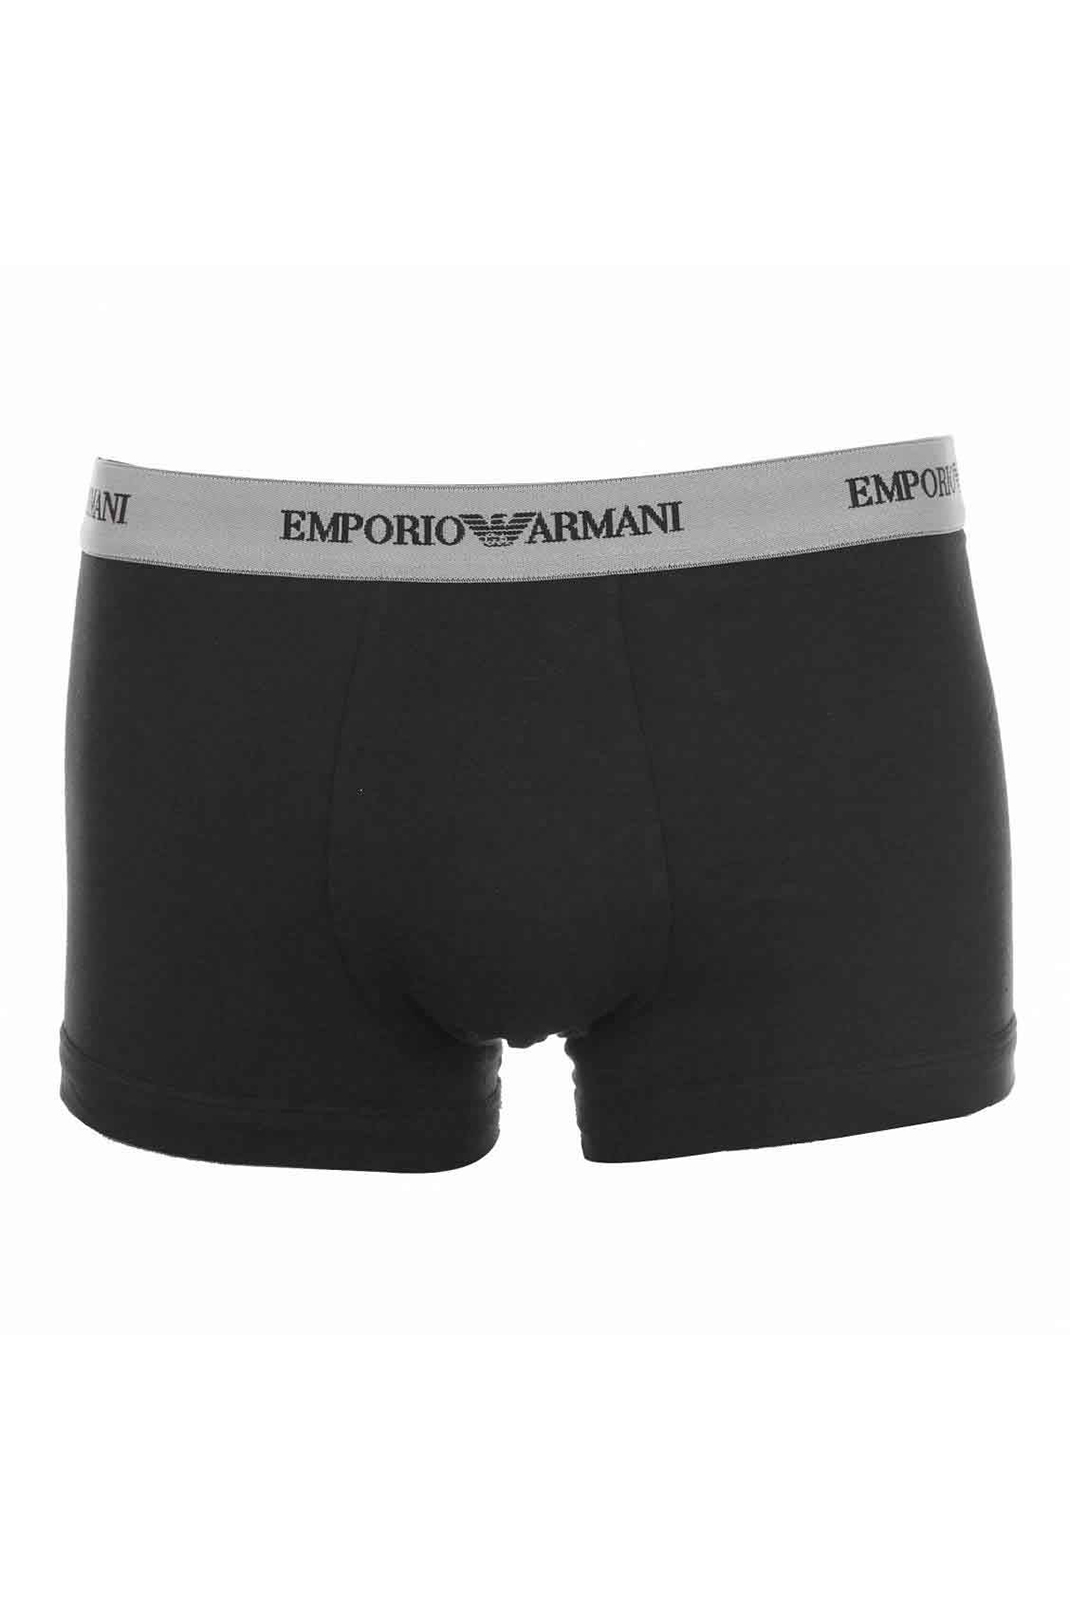 Emporio Armani 111357 Cc717 - Tripack / Boxers Noir Pour Homme  